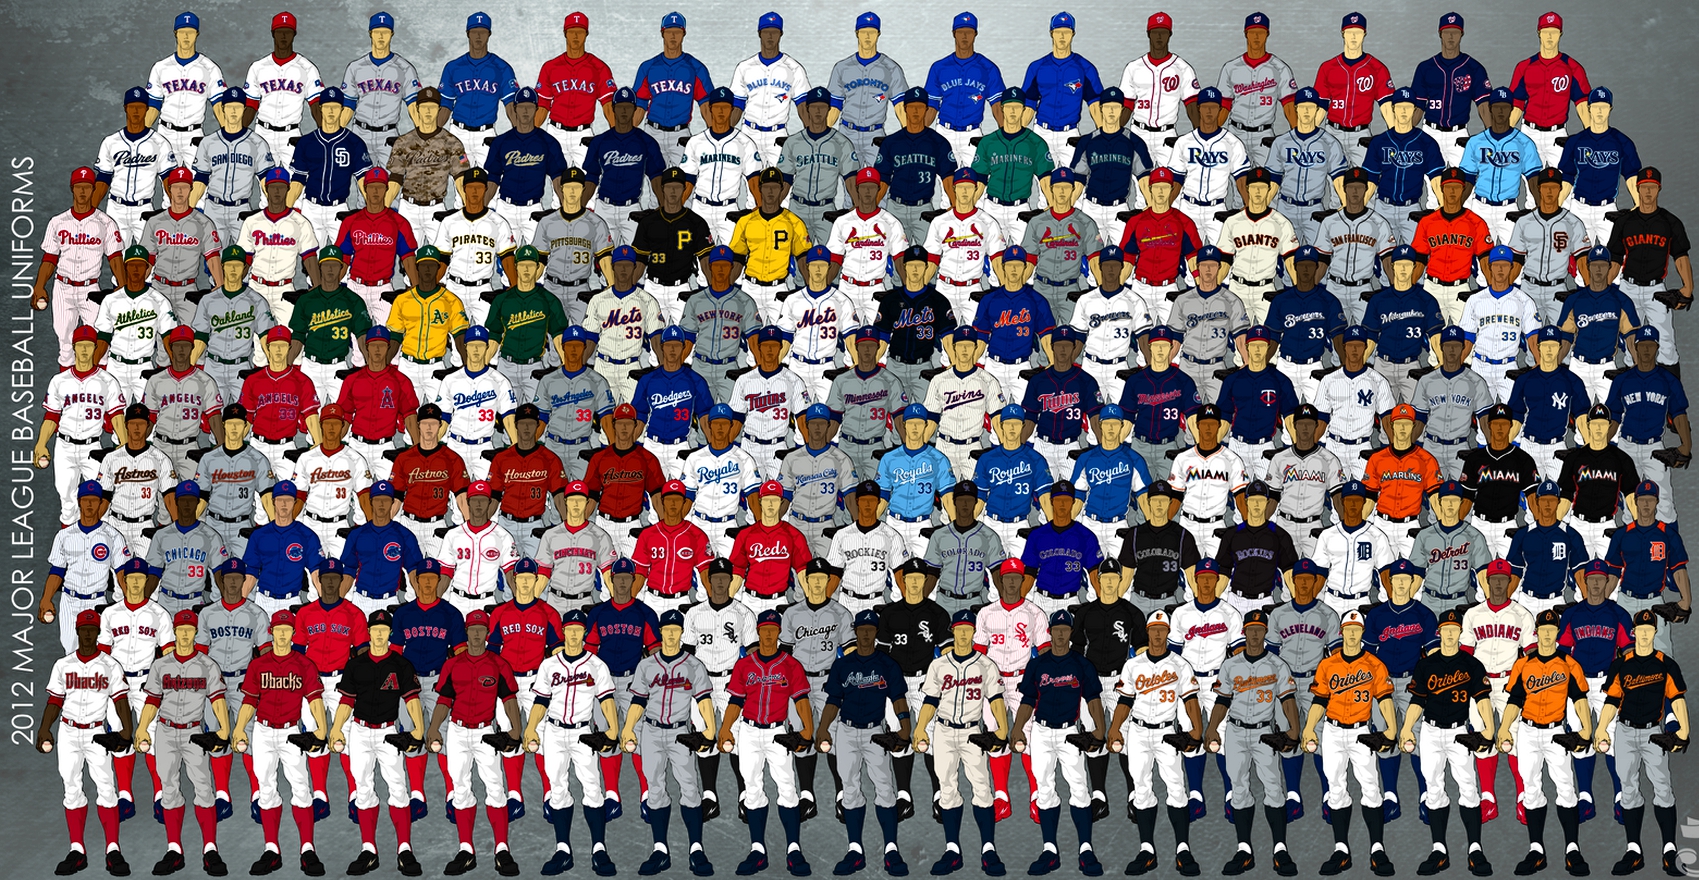 2012 MLB Jerseys wallpaper   ForWallpapercom